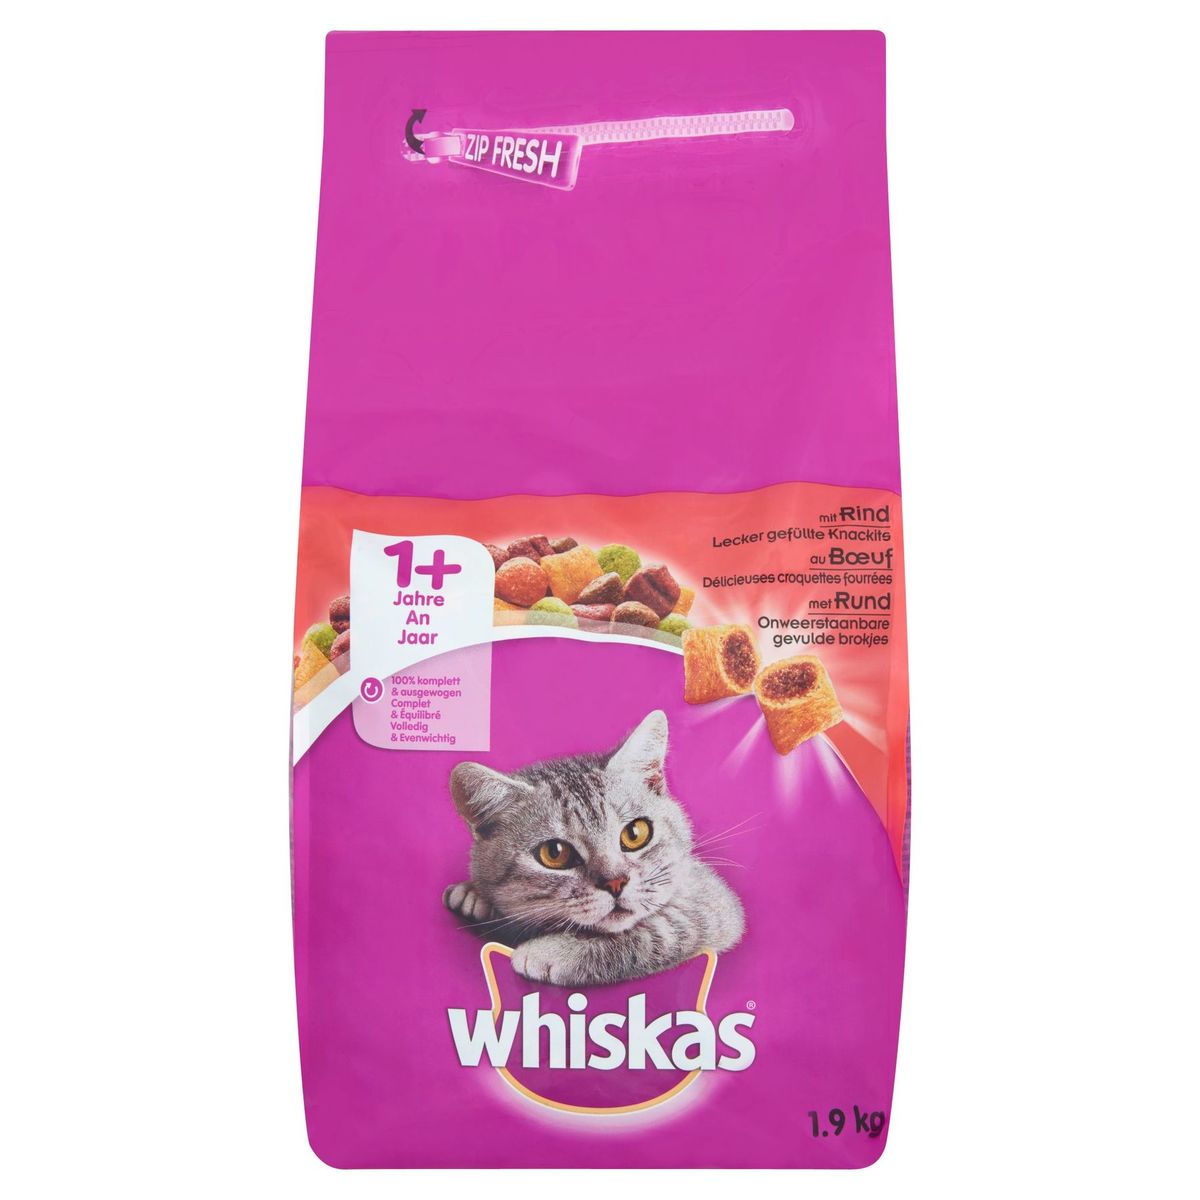 Droge Voeding Whiskas Onweerstaanbare Gevulde 1+ Jaar Kattenvoeding met Rund 1.9 kg